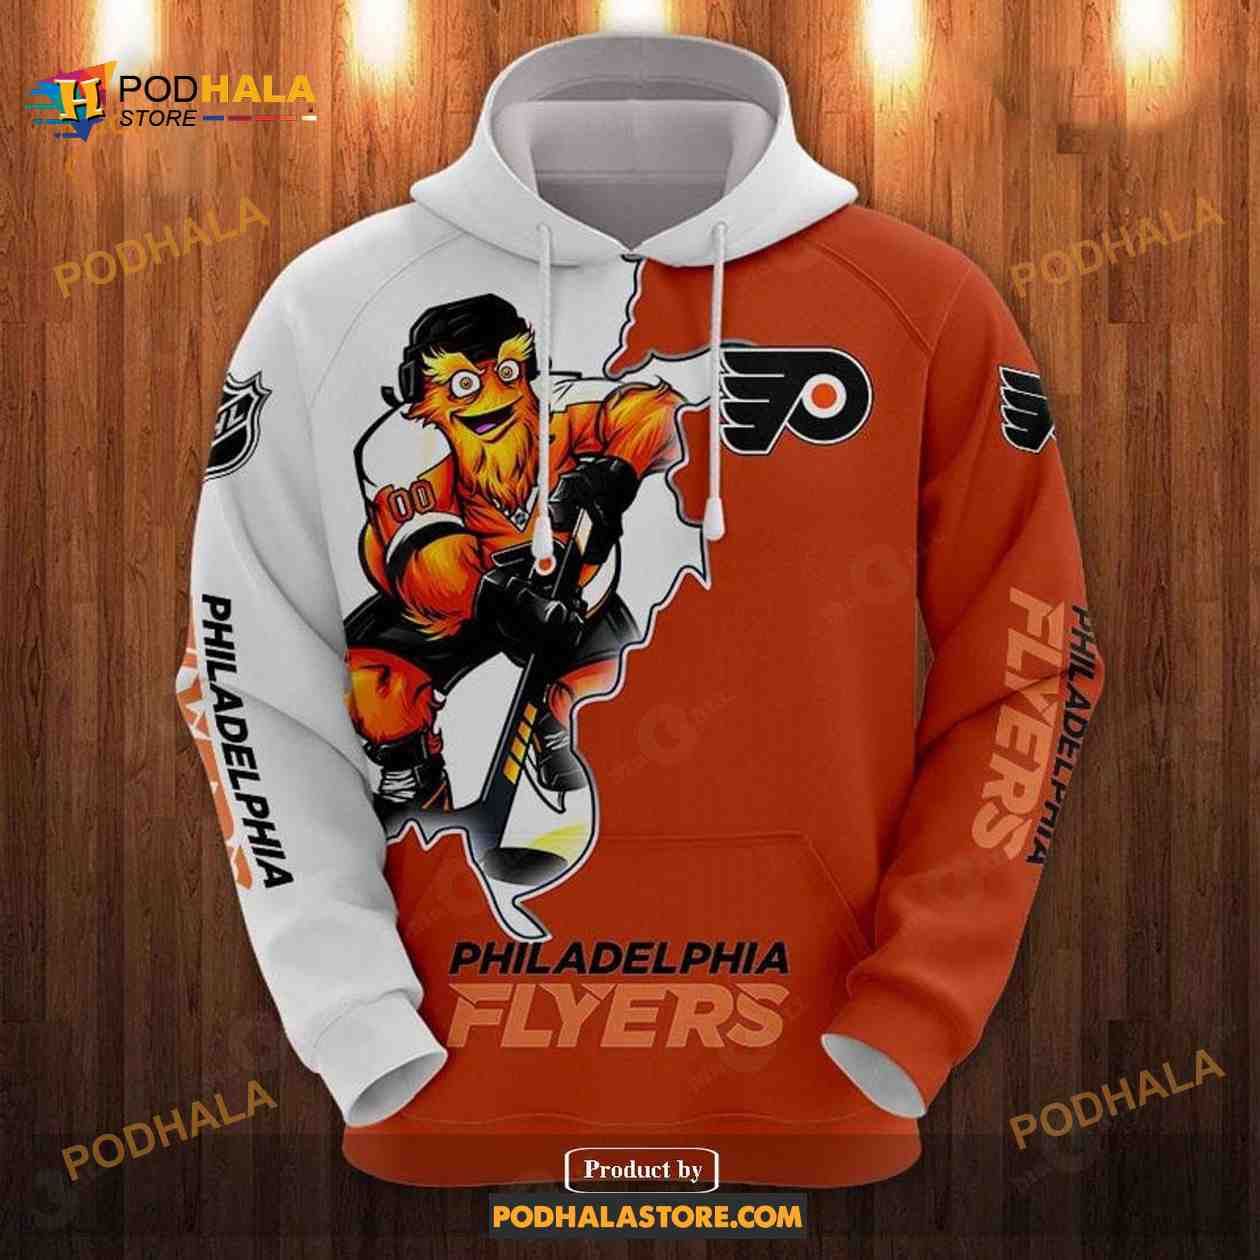 philadelphia Flyers Love Sweatshirt